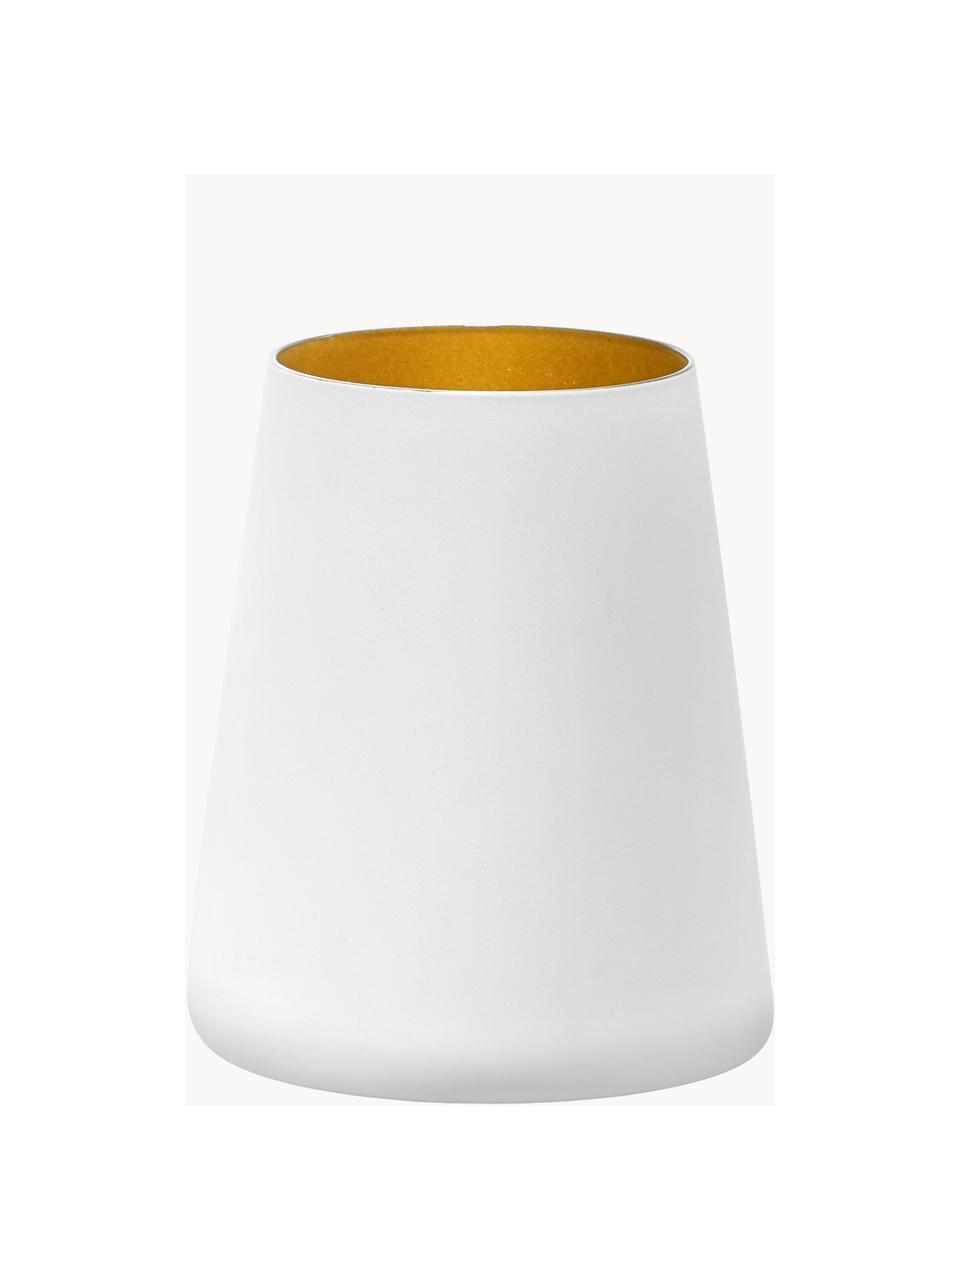 Vasos cóctel de cristal Power, 6 uds., Cristal recubierto, Blanco, dorado, Ø 9 x Al 10 cm, 380 ml